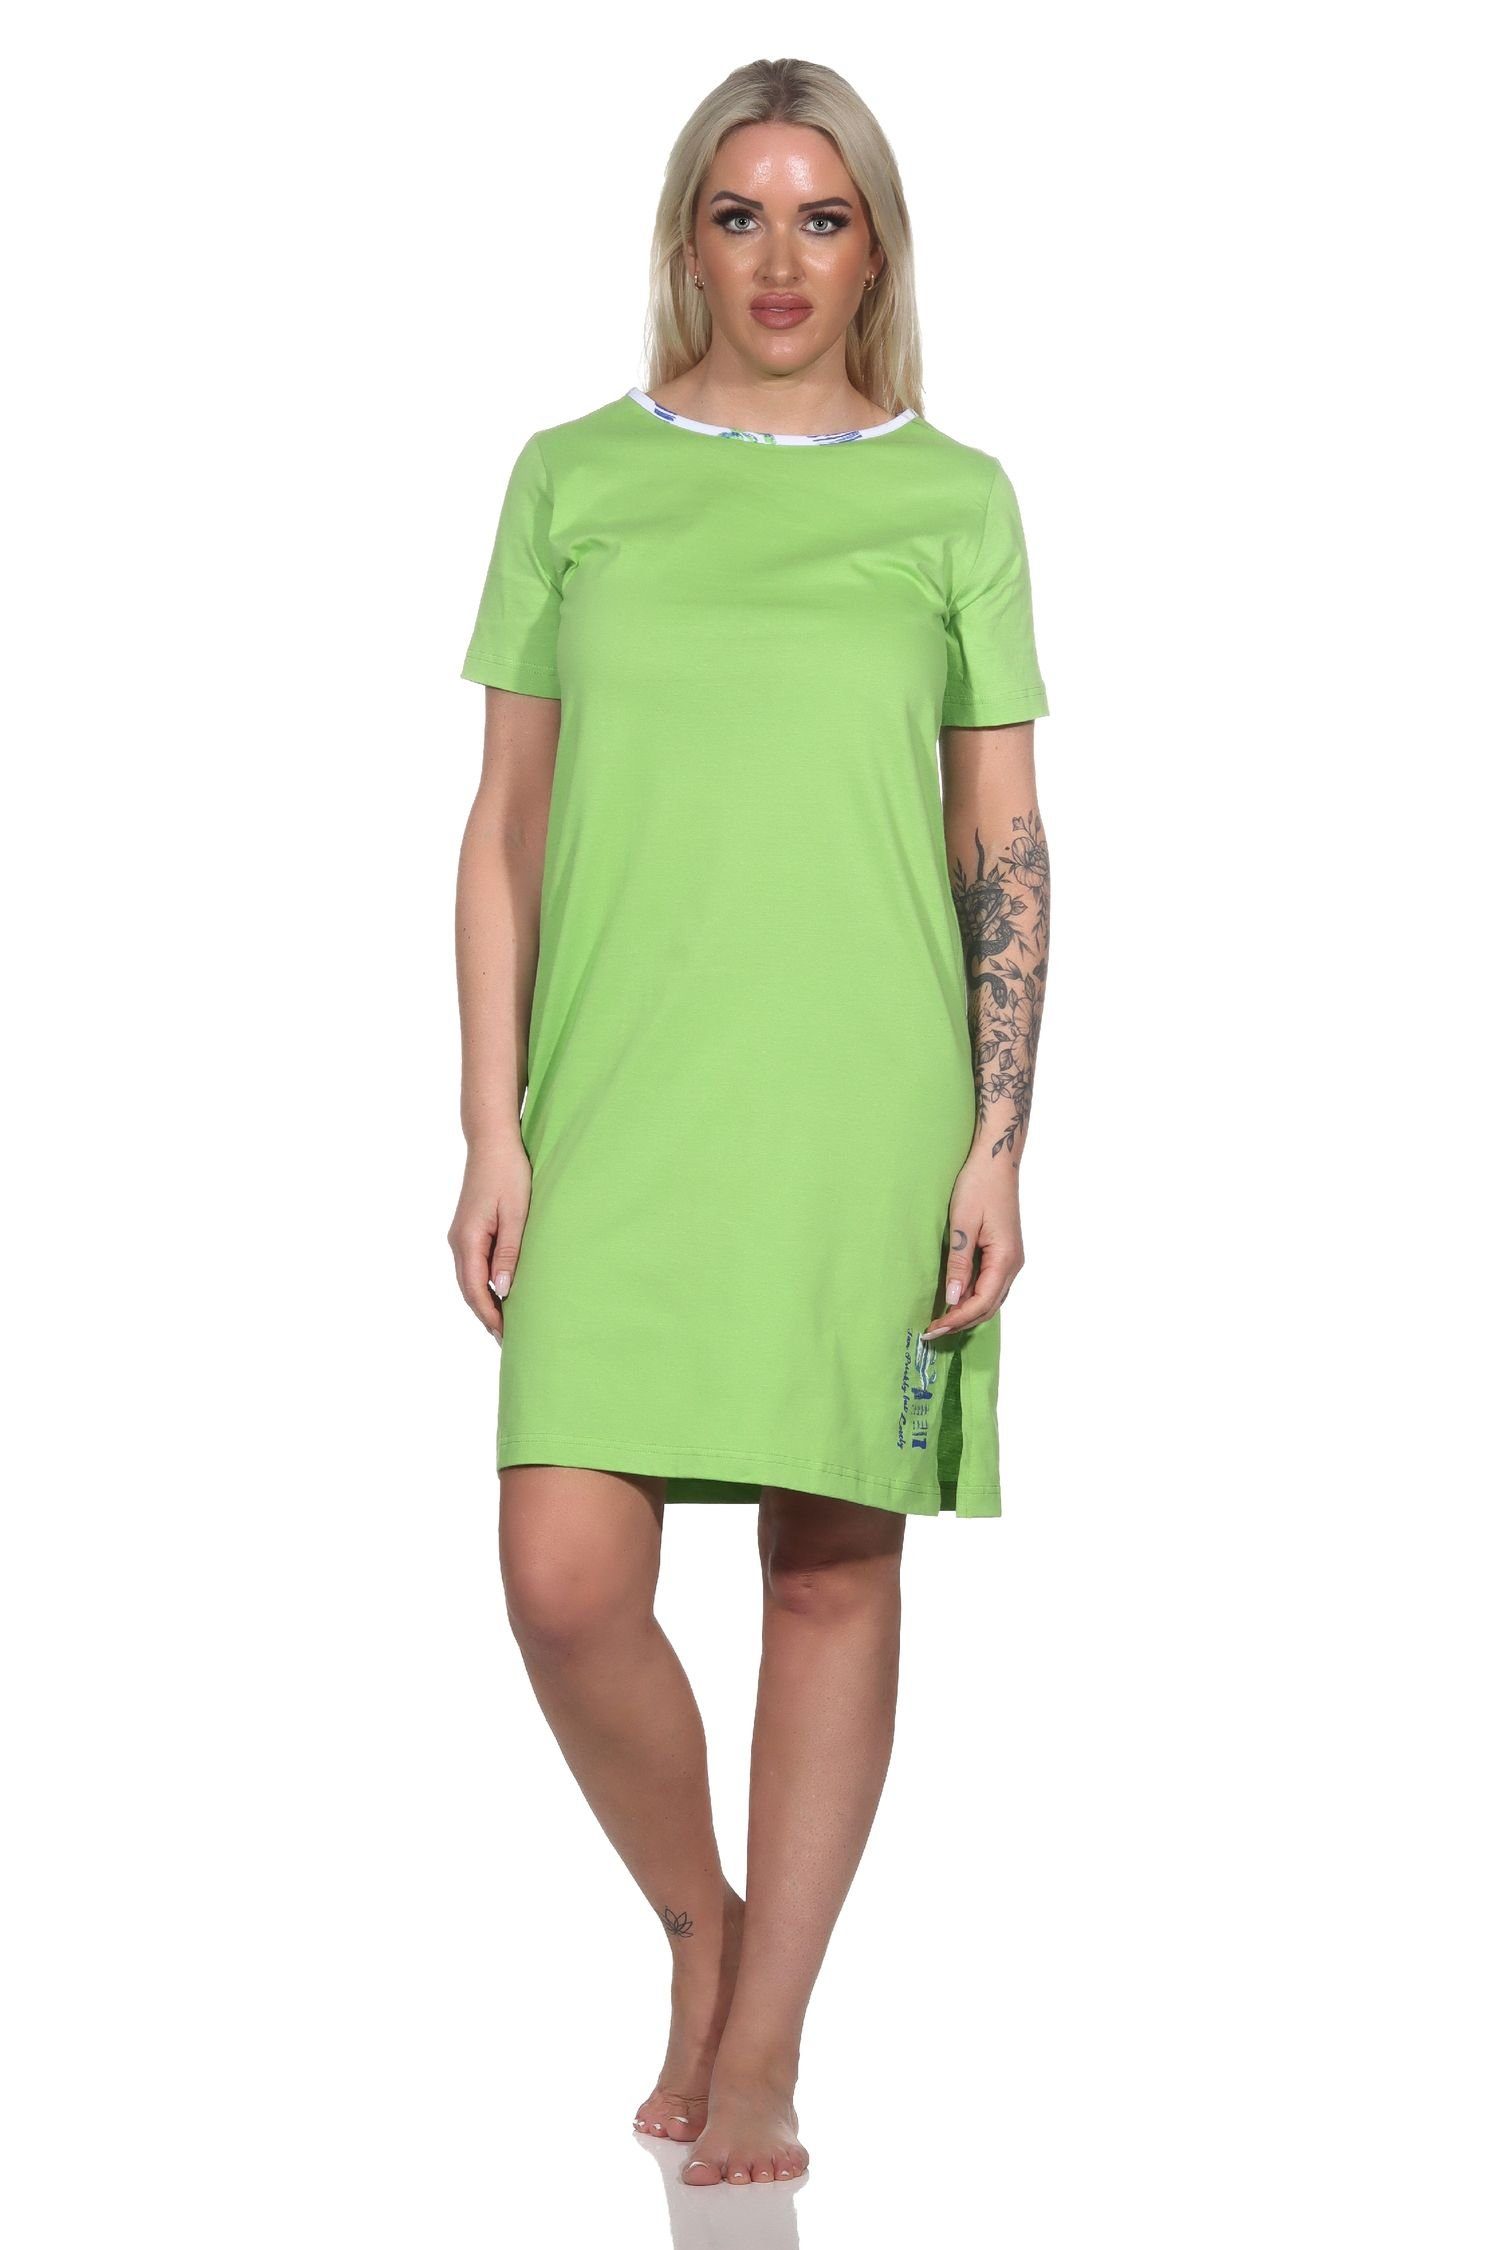 Normann Damen Nachthemd Nachthemd grün kurzarm als Motiv Kaktus mit